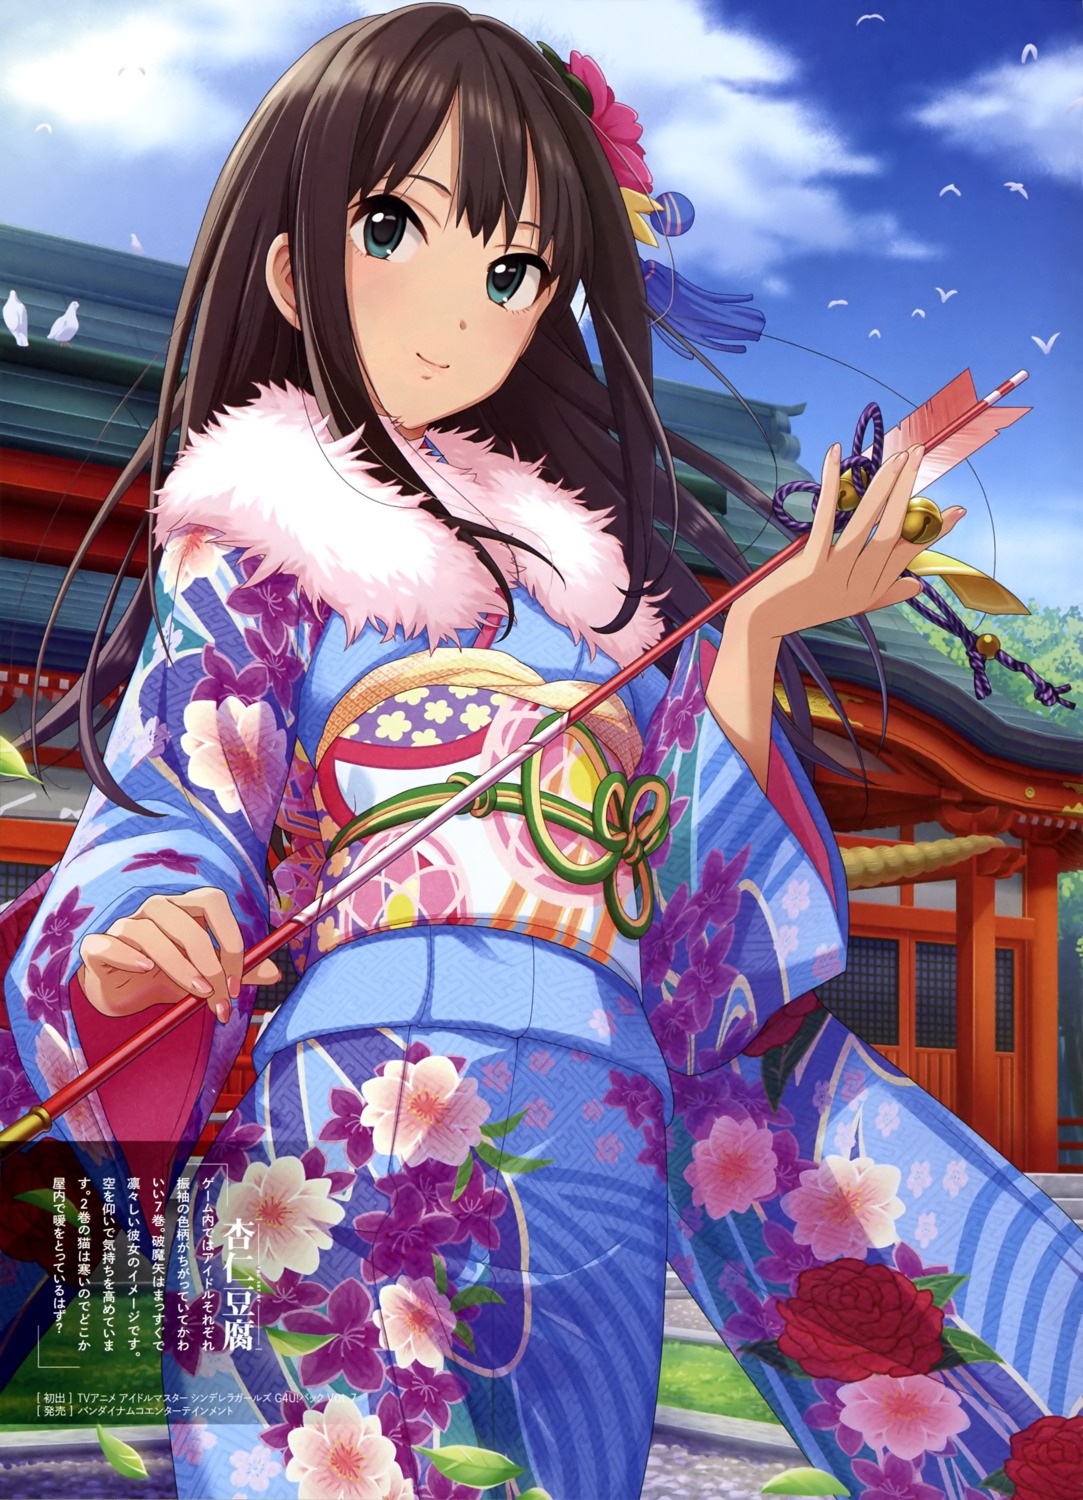 annin_douhu kimono shibuya_rin the_idolm@ster the_idolm@ster_cinderella_girls